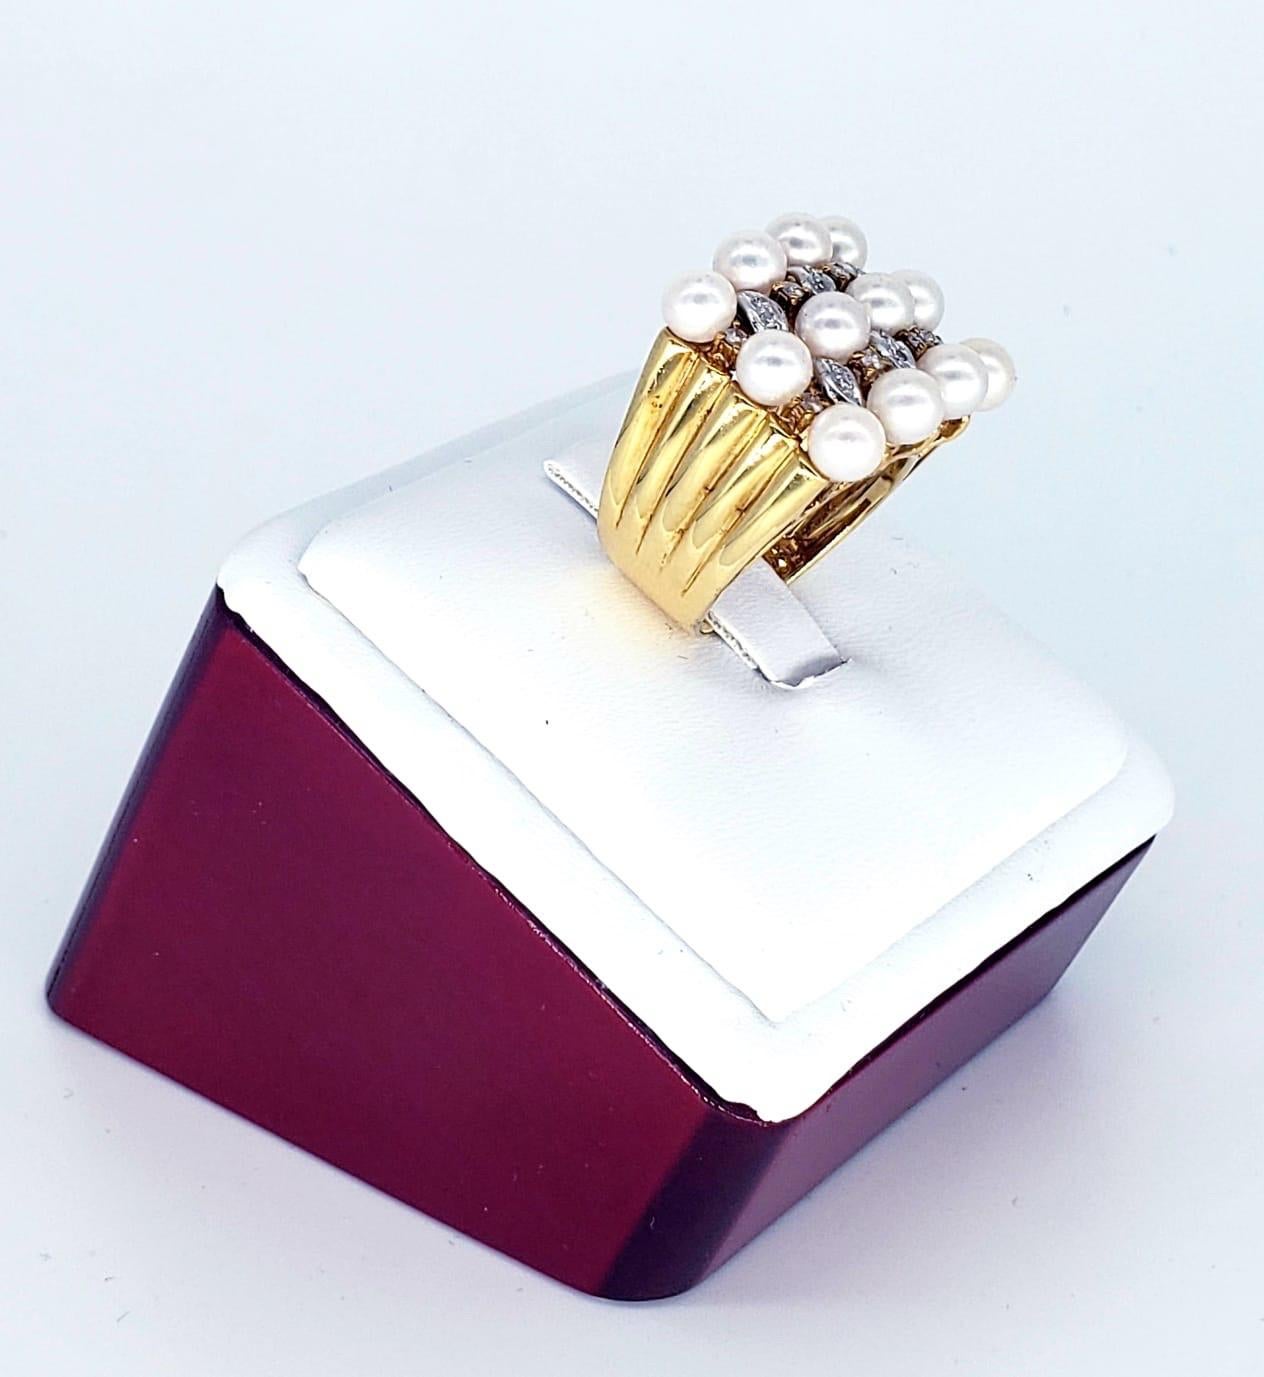 Bague de mariée vintage en 18k, diamants et perles. La bague comporte 12 perles d'une taille de 4,8 mm chacune. Les diamants ont un poids total d'environ 0,40 carat. La bague pèse 14 grammes. Bague de mariée luxueuse et tendance, fabriquée à la main